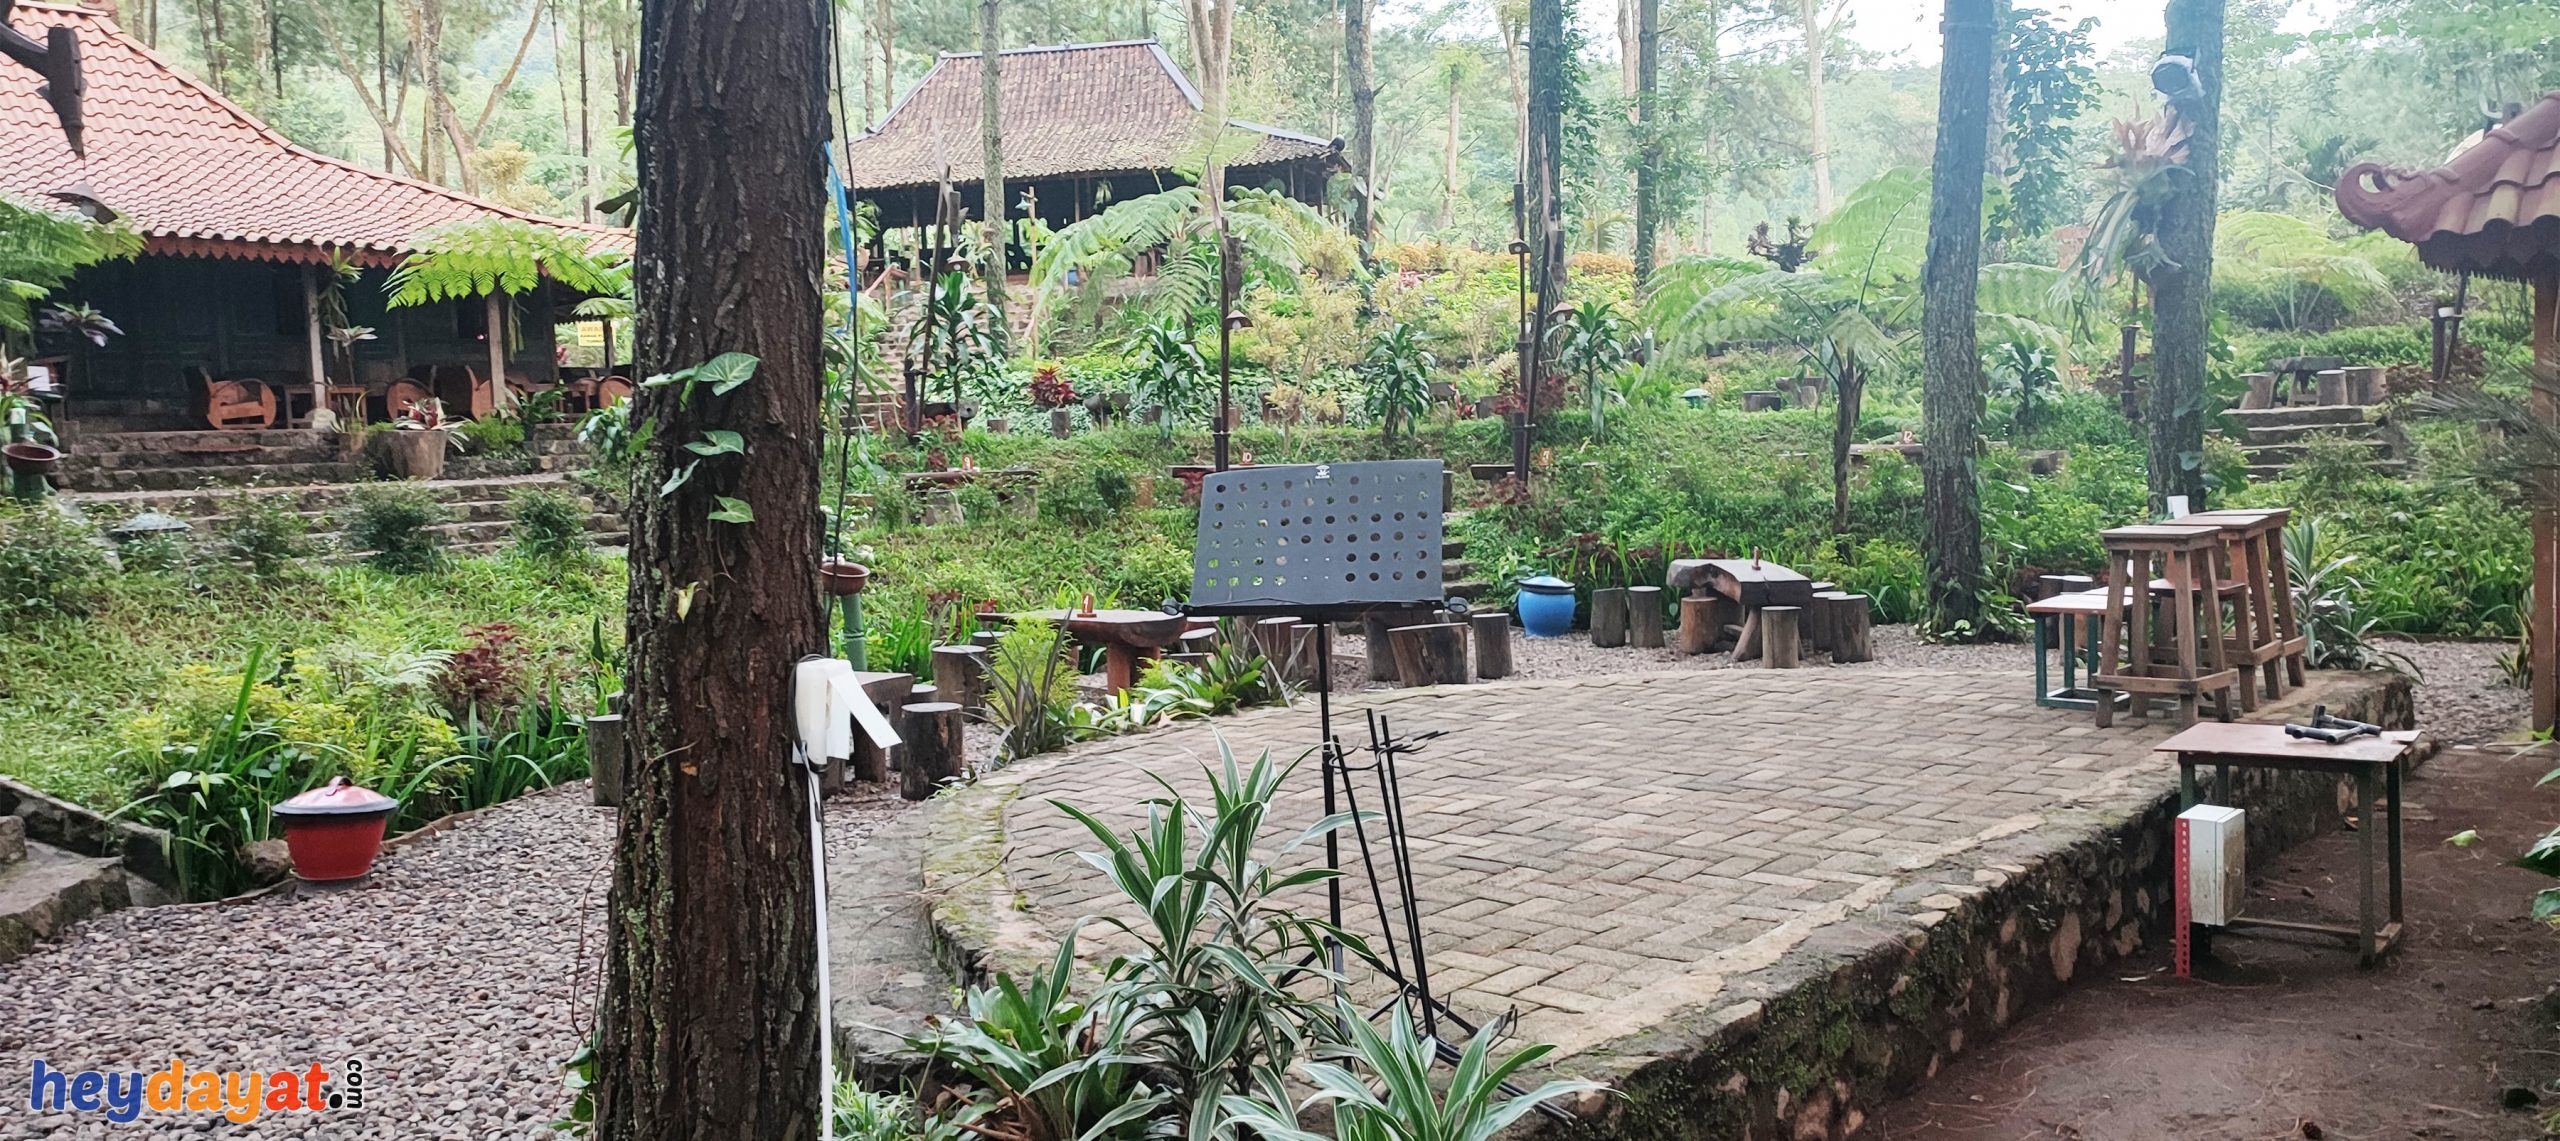 Cafe Outdoor Dengan Live Music, Kedai Hutan Cempaka Adventure Prigen Pasuruan